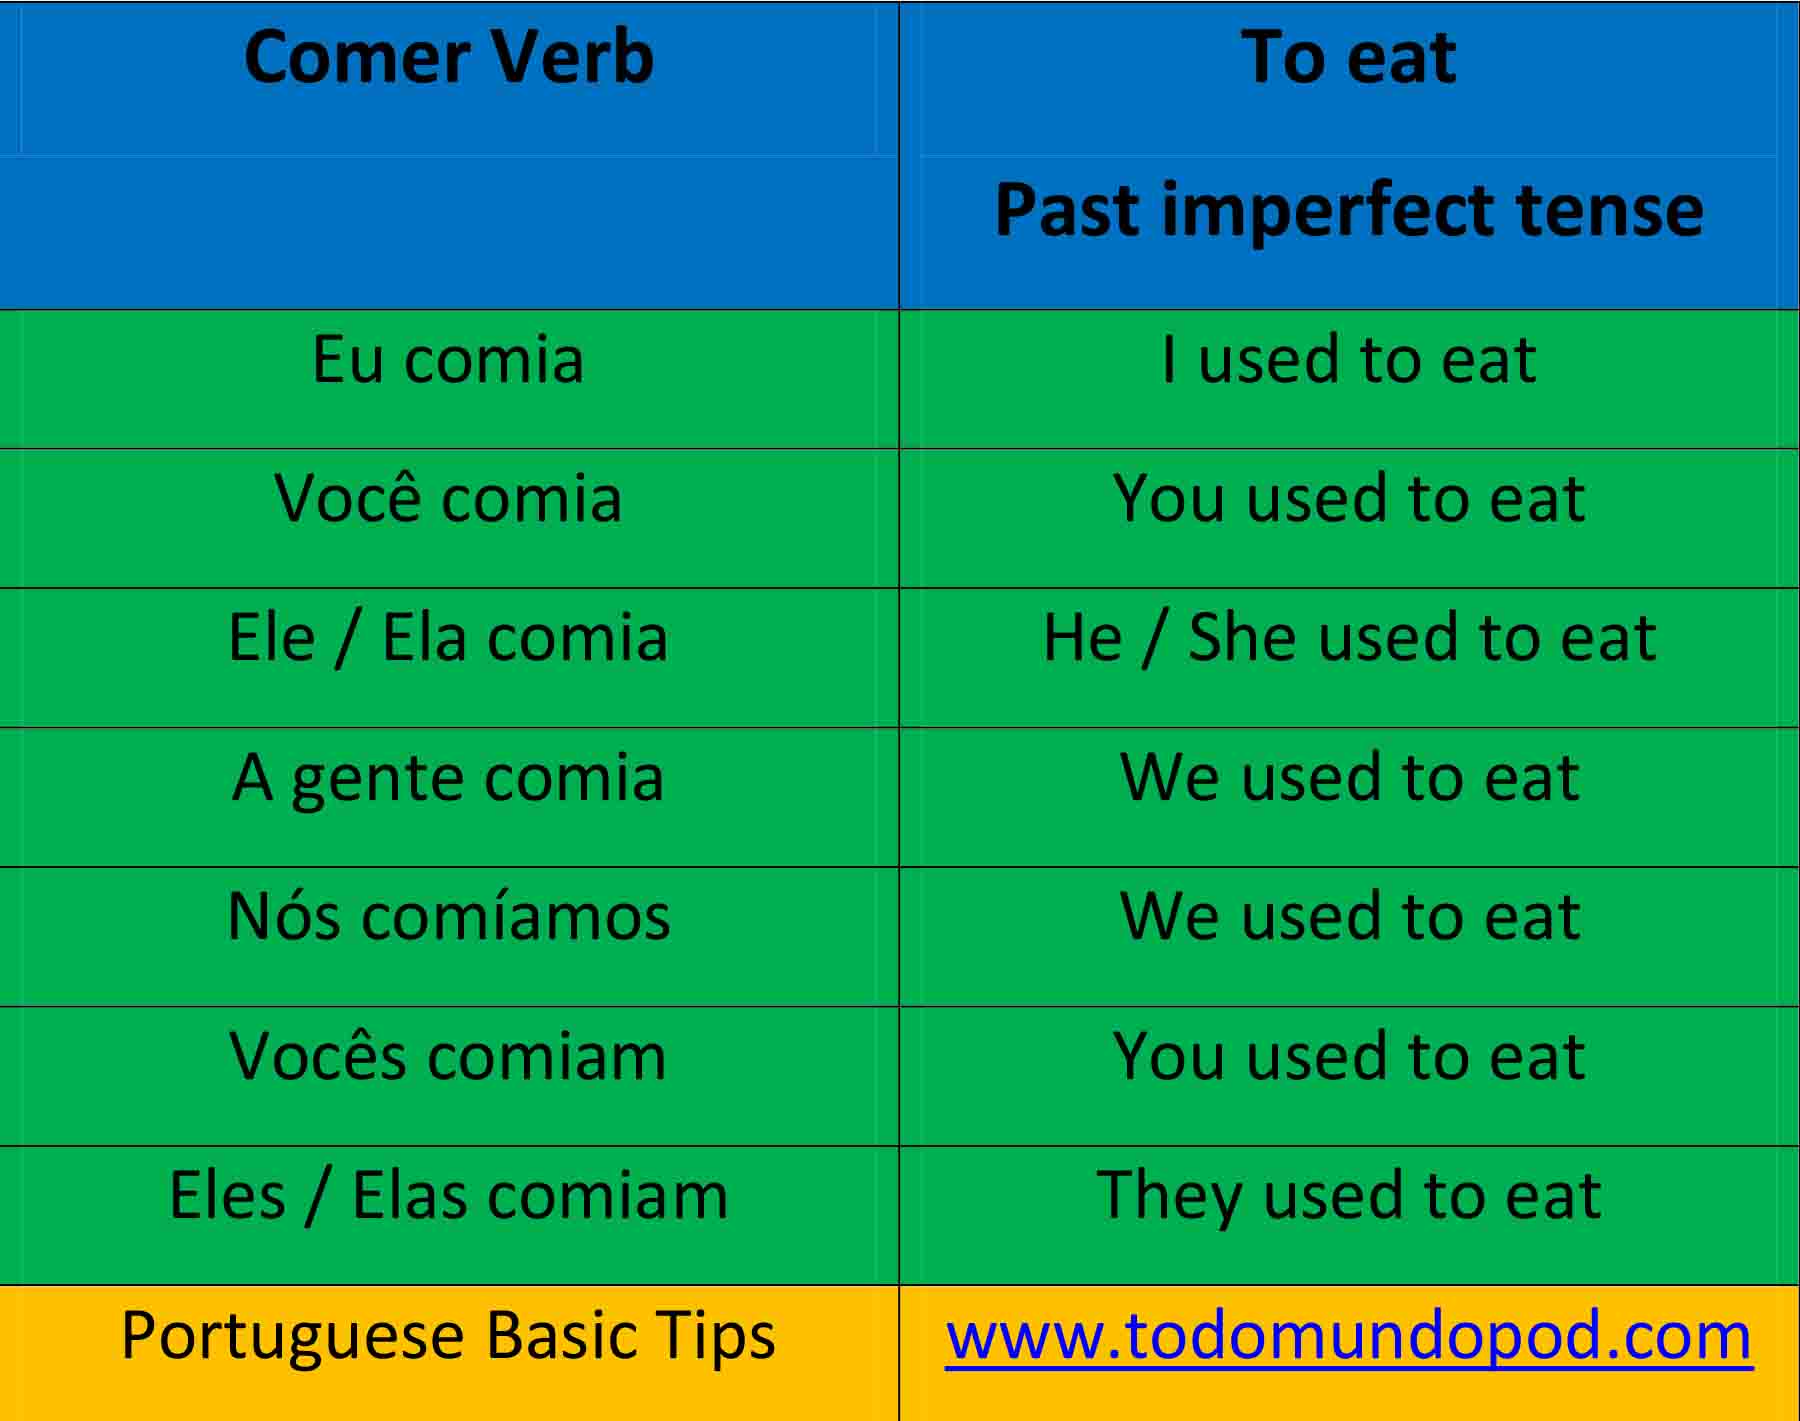 portuguese-past-imperfect-tense-comer-verb-todo-mundo-pod